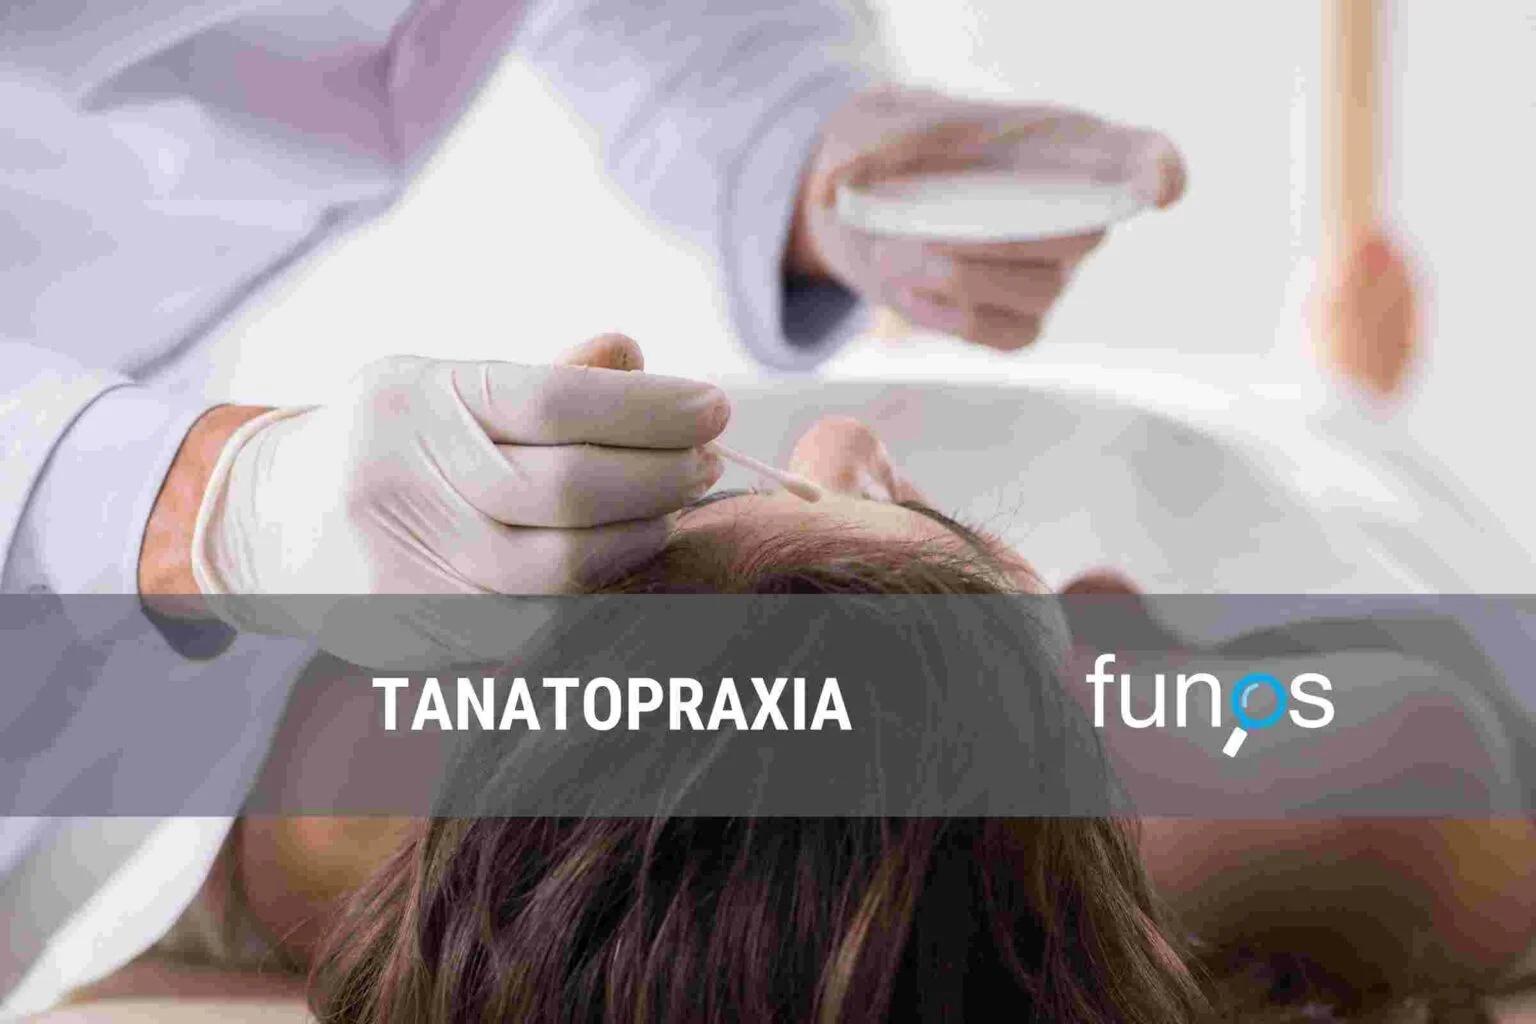 Post sobre Tanatopraxia en Funos